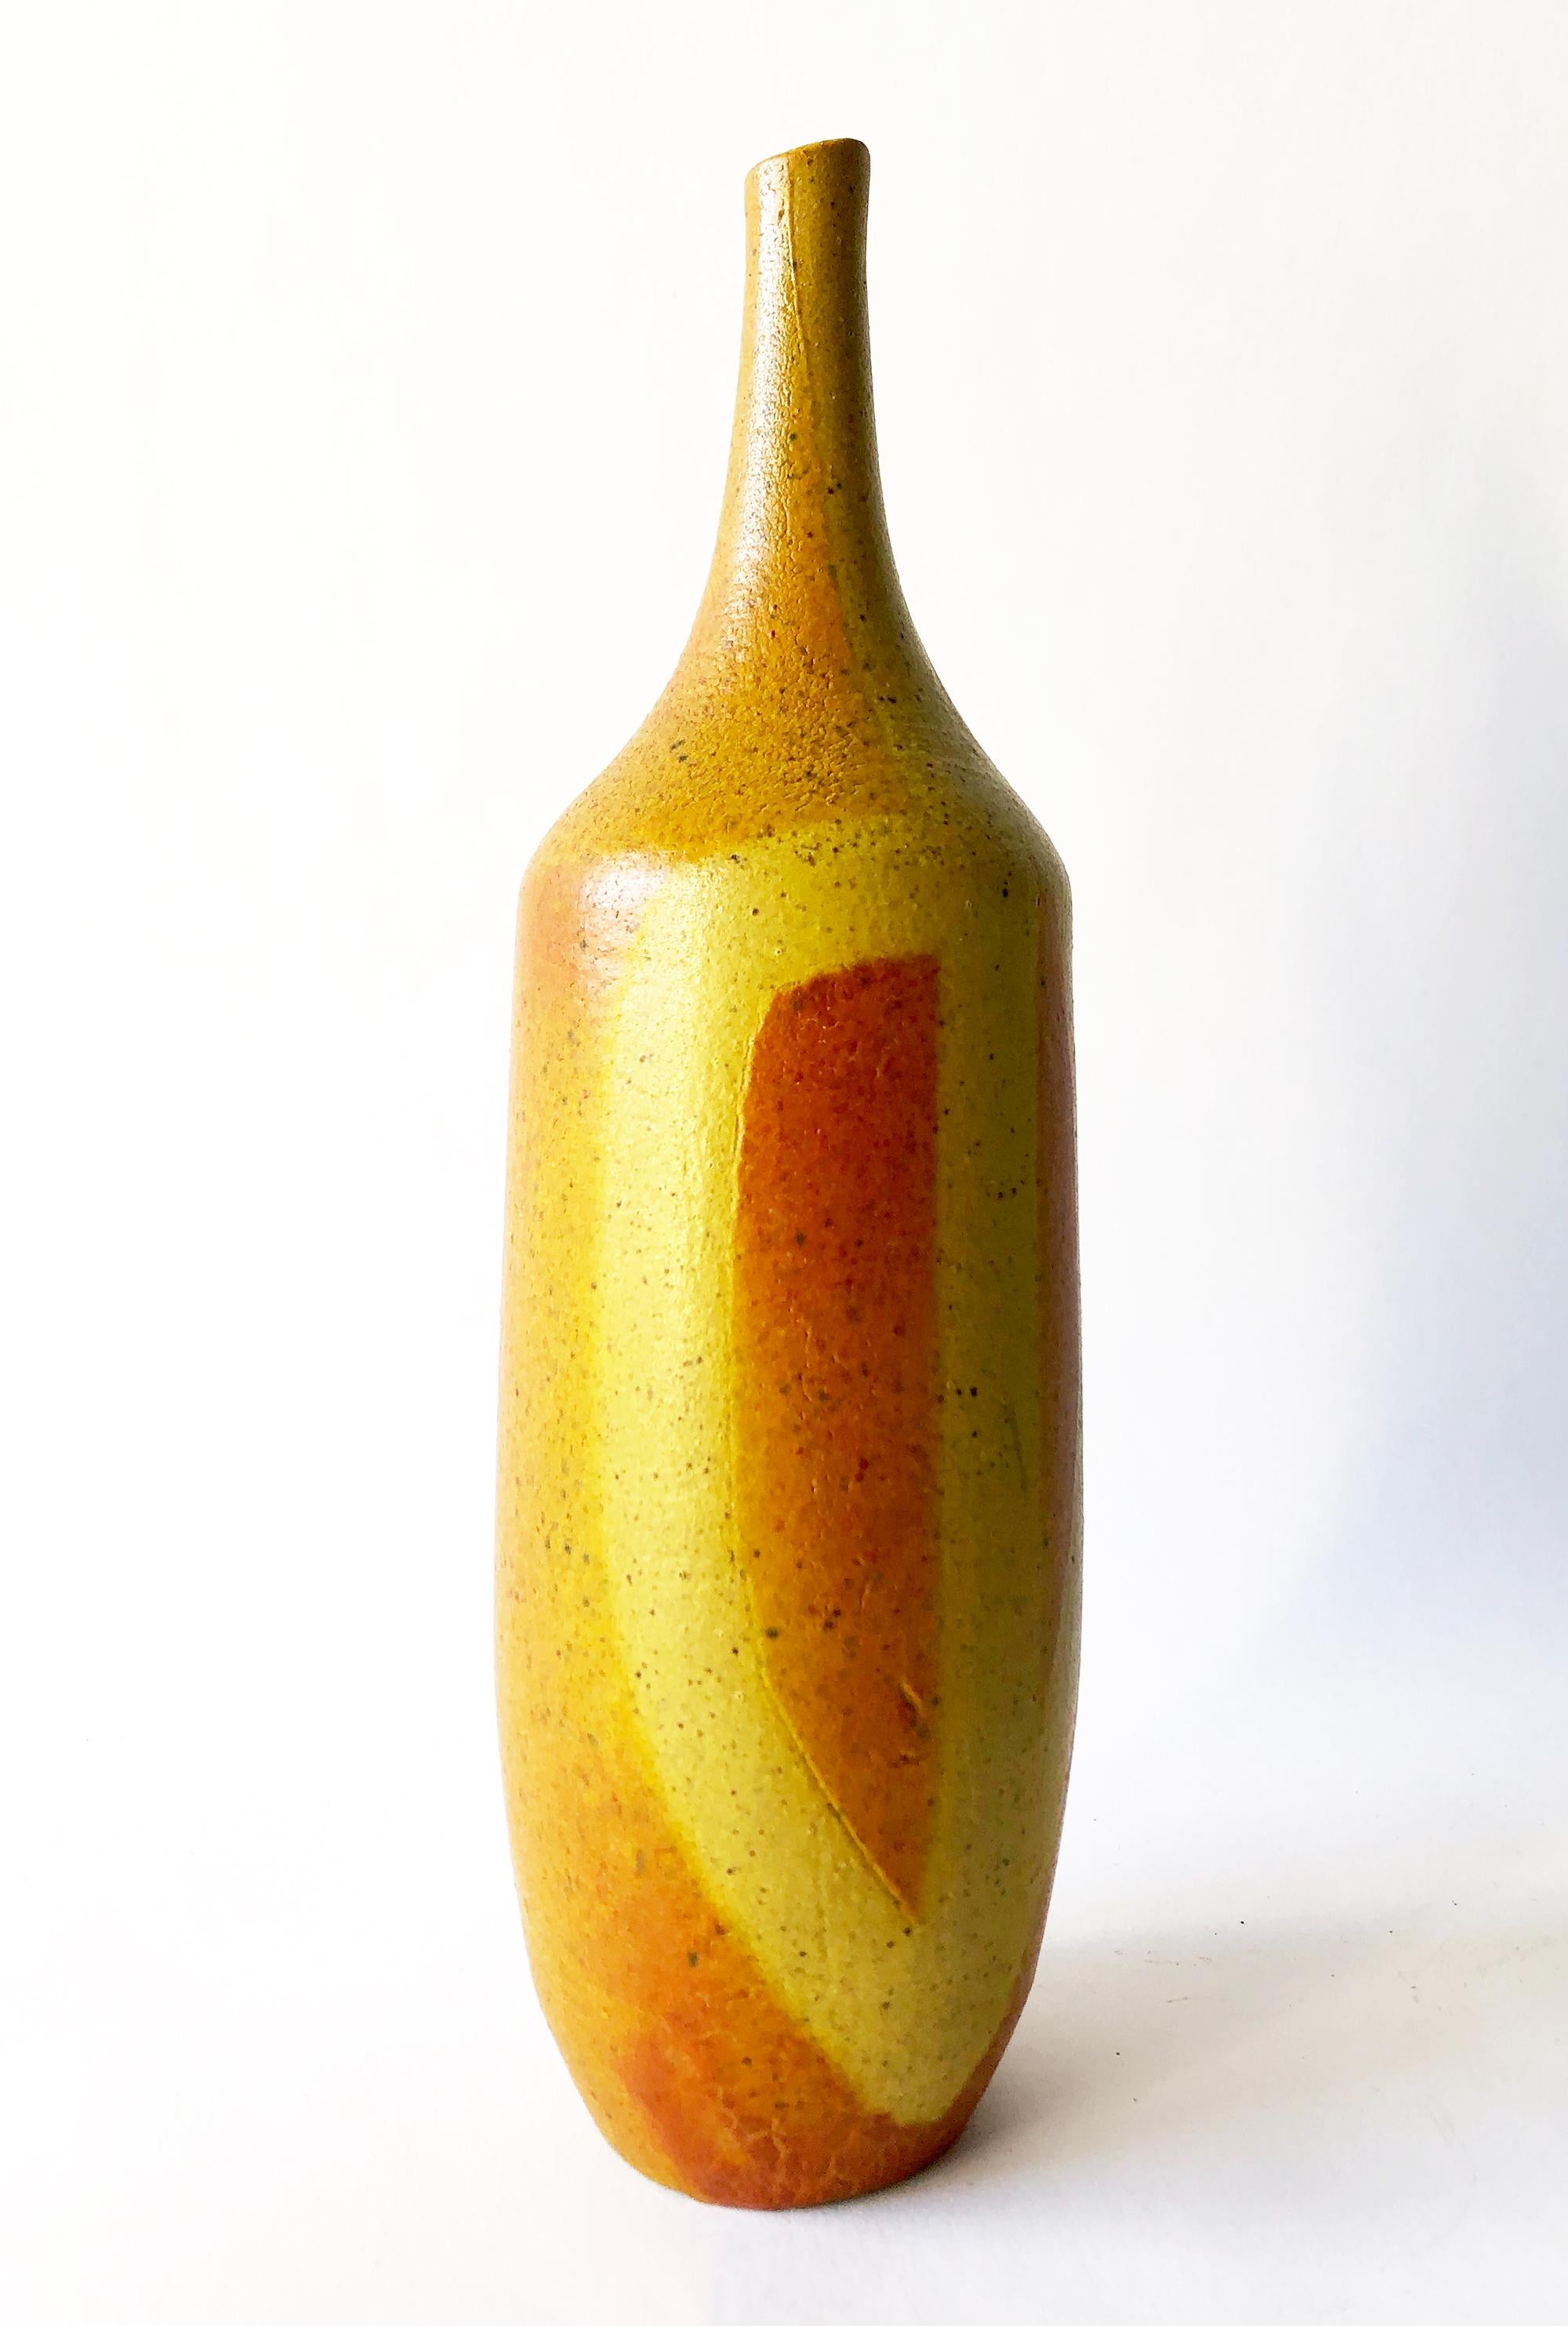 Elongated ceramic bottle vase by Rose Truchnovsky of Quebec, Canada. Vase measures 11